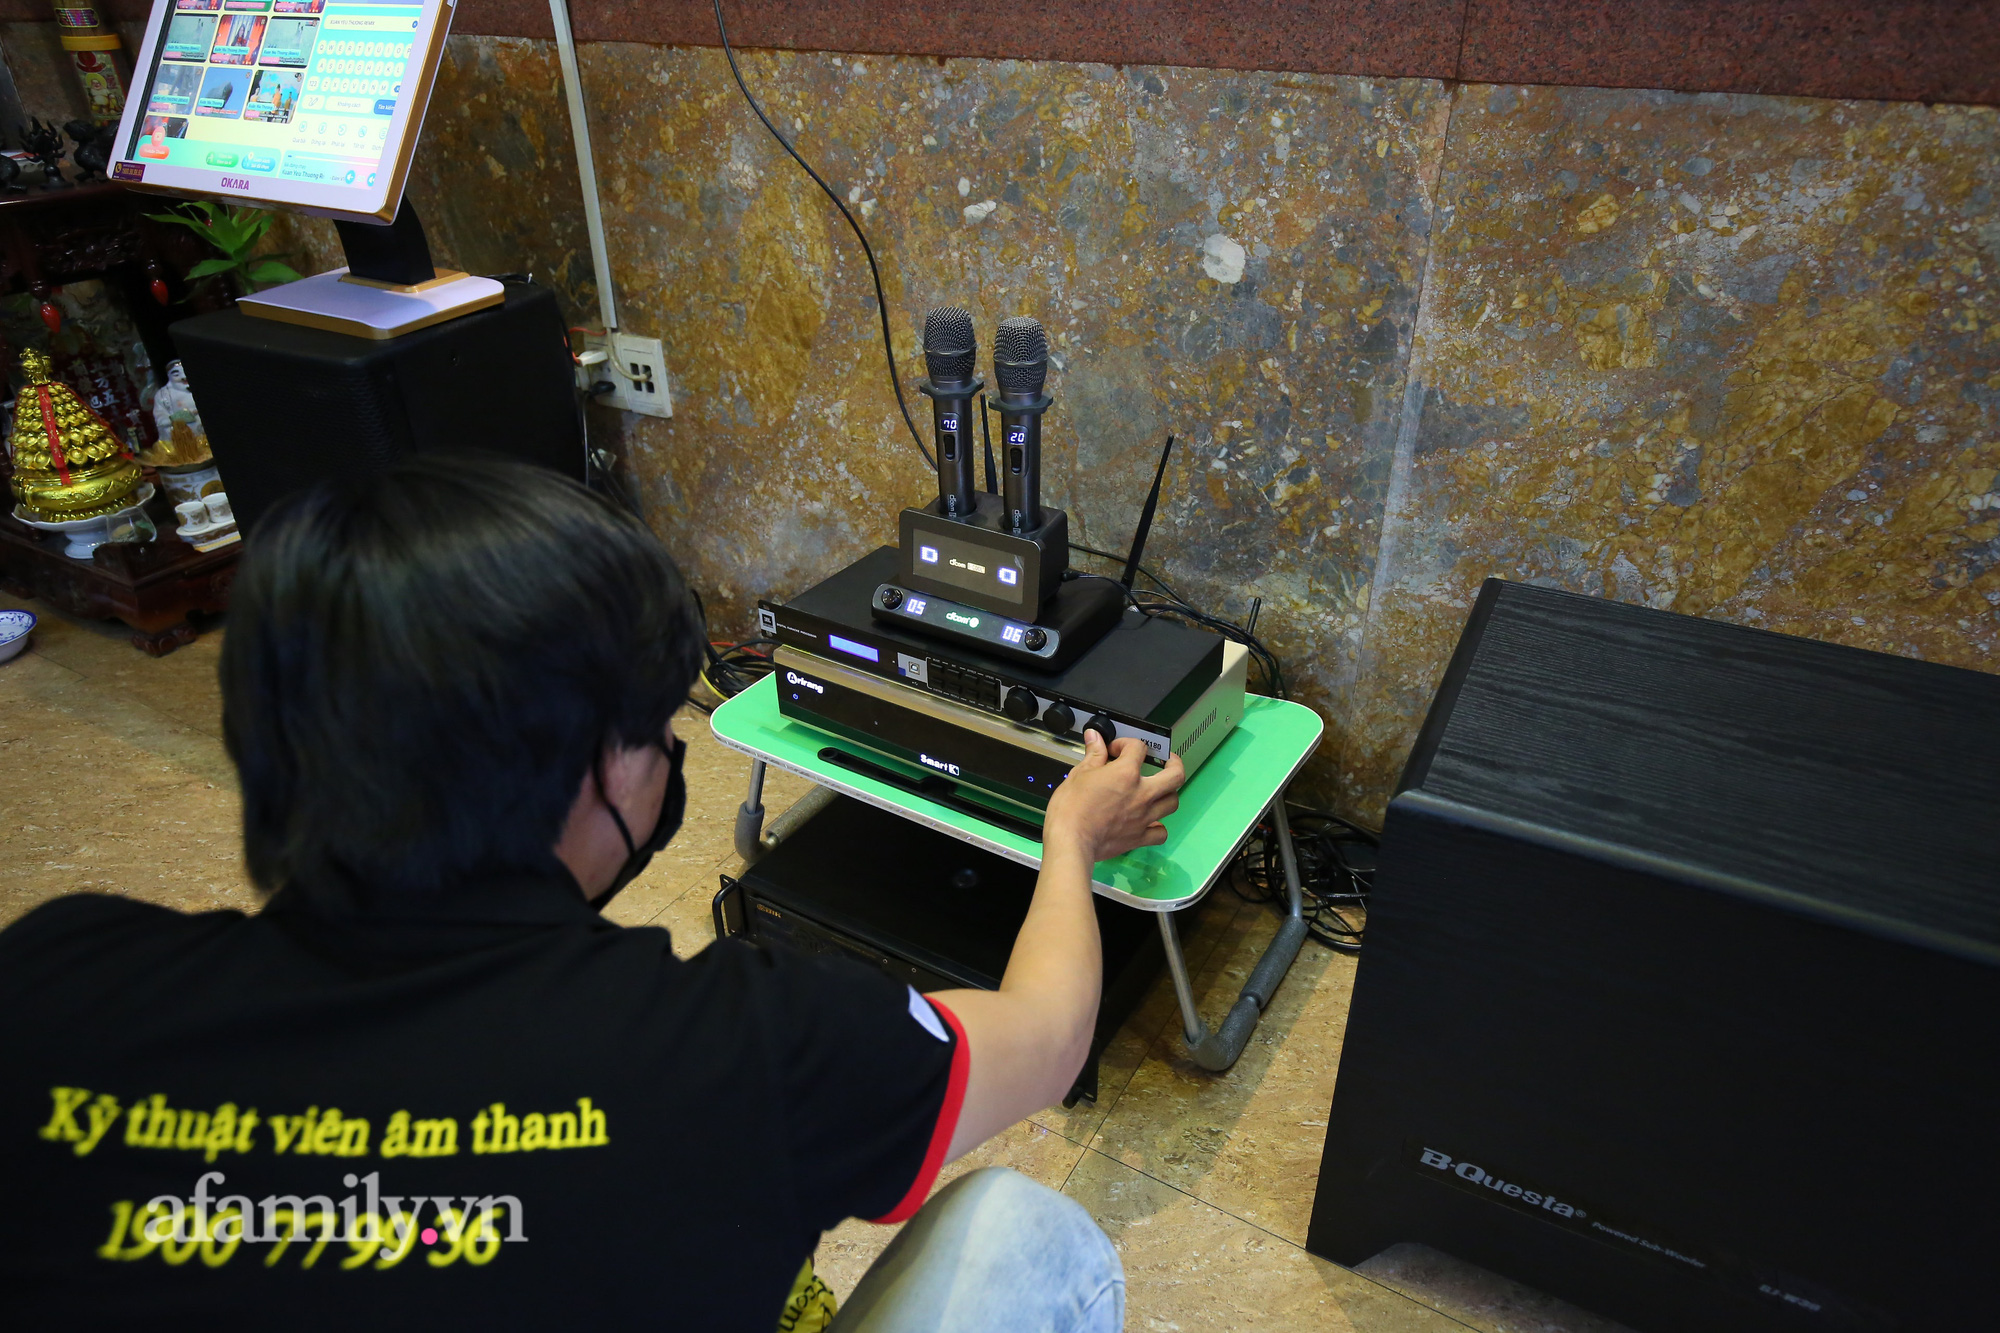 Dịch vụ "KARAOKE MANG VỀ" của chuỗi karaoke nổi tiếng ở Sài Gòn: Thuê không sướng, nhiều người bỏ vài trăm triệu mua trọn bộ được lắp hẳn phòng cách âm nhưng liệu có khả thi?  - Ảnh 6.